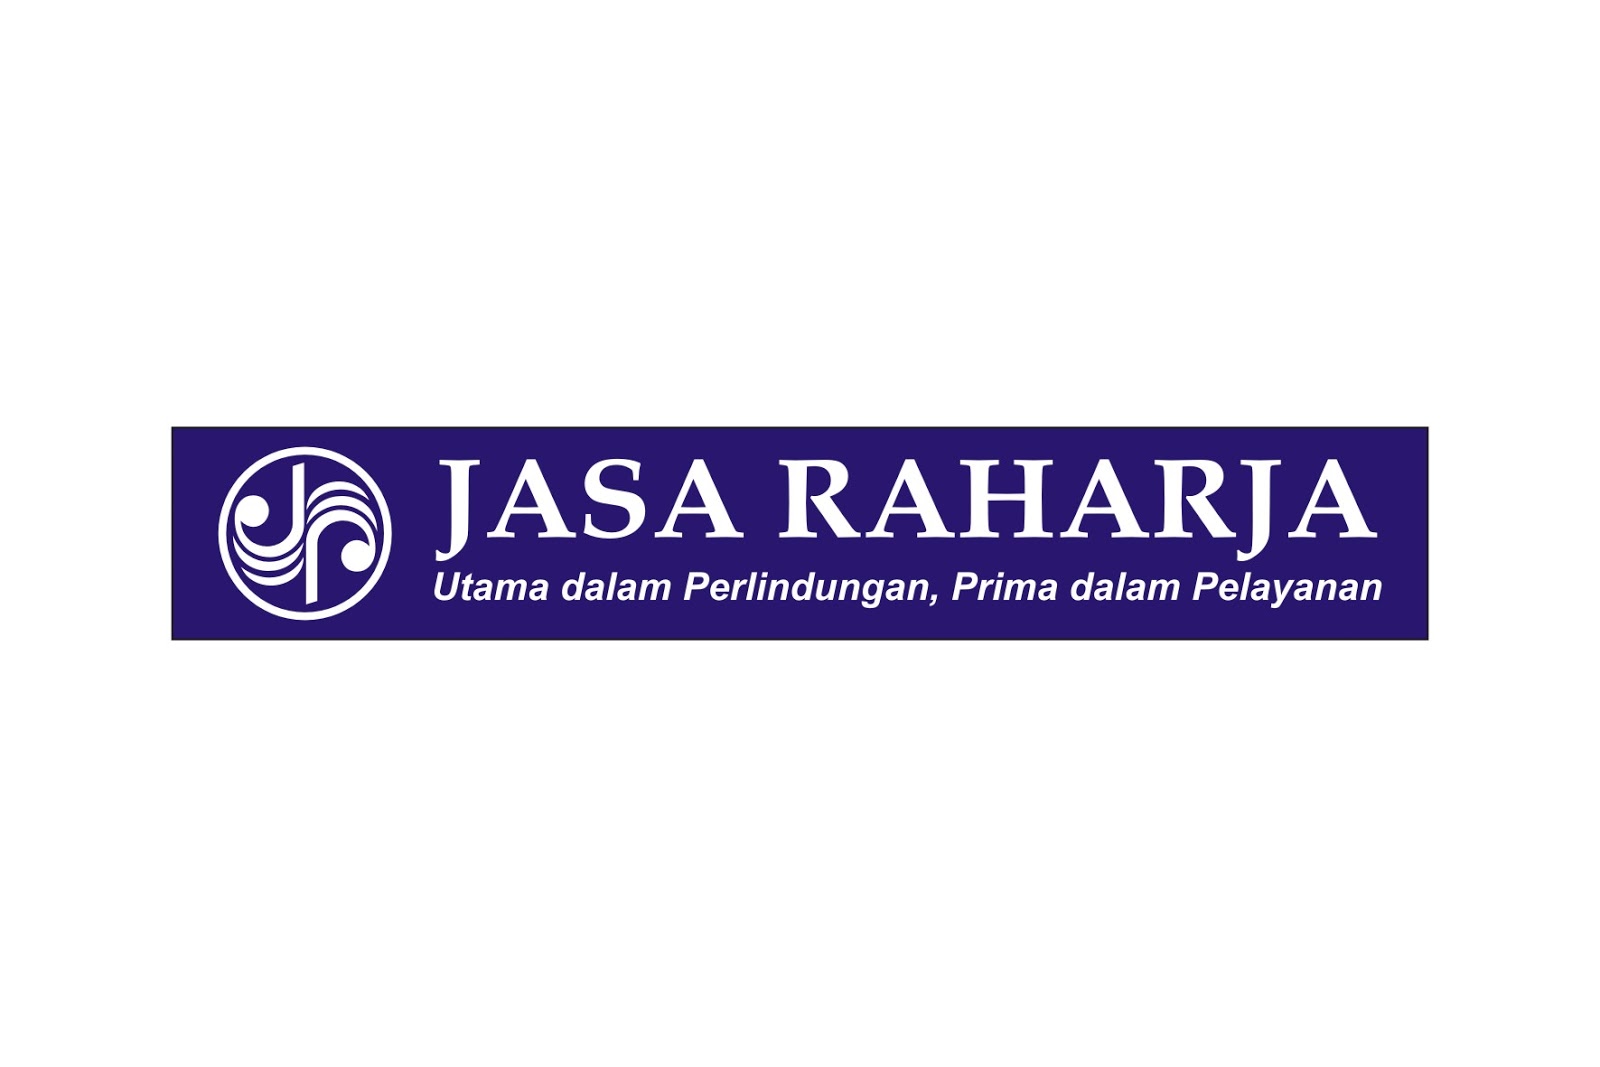  Jasa Raharja Logo 